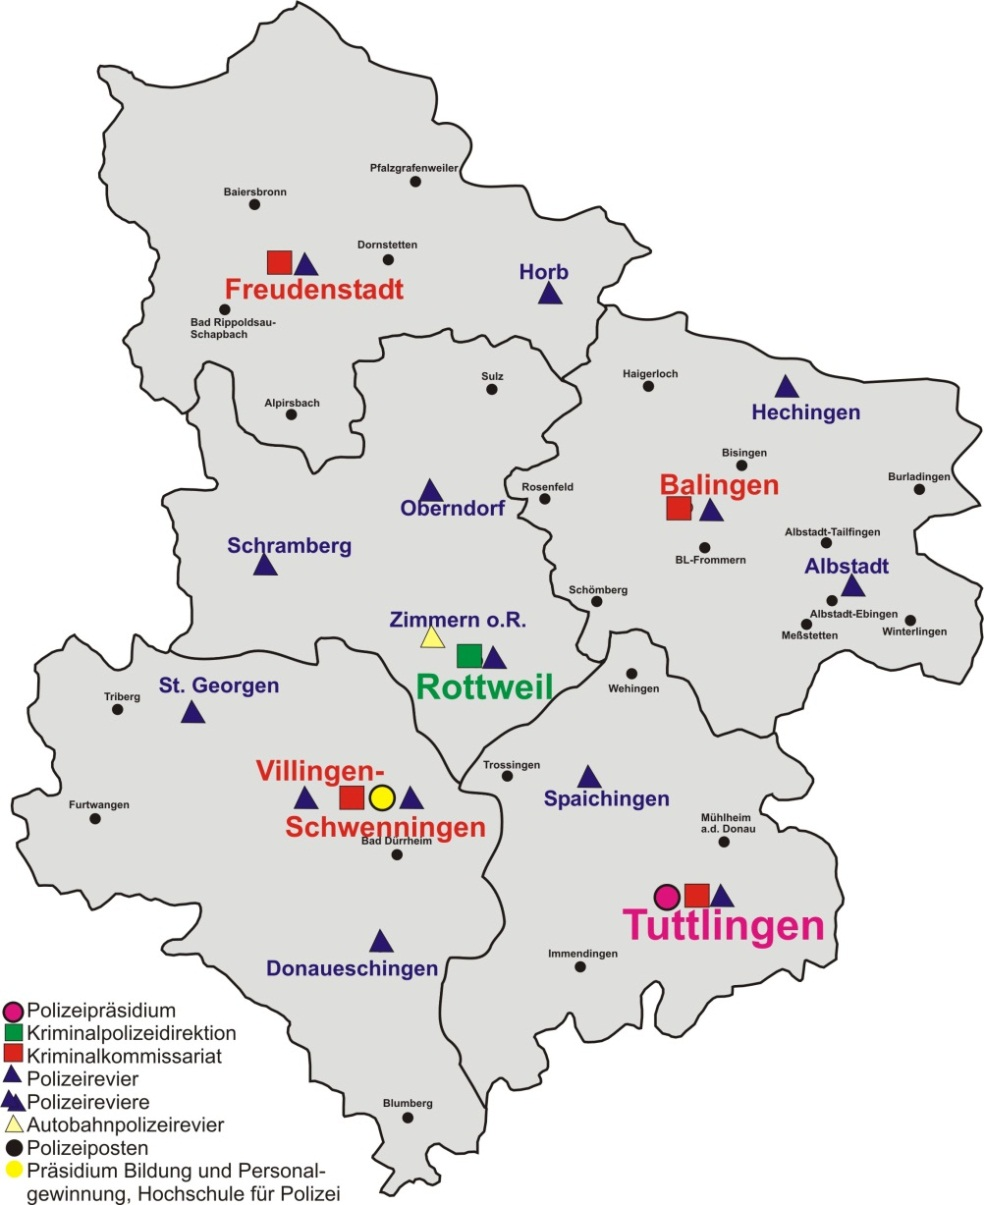 Polizeipräsidium Tuttlingen, Rottweil, Balingen, Freudenstadt, Villingen-Schwenningen Gesamt 1.435 PVD 1.53 davon Schutzpolizei 1.030 davon Kriminalpolizei 3 NVZ 183 788.311 4.